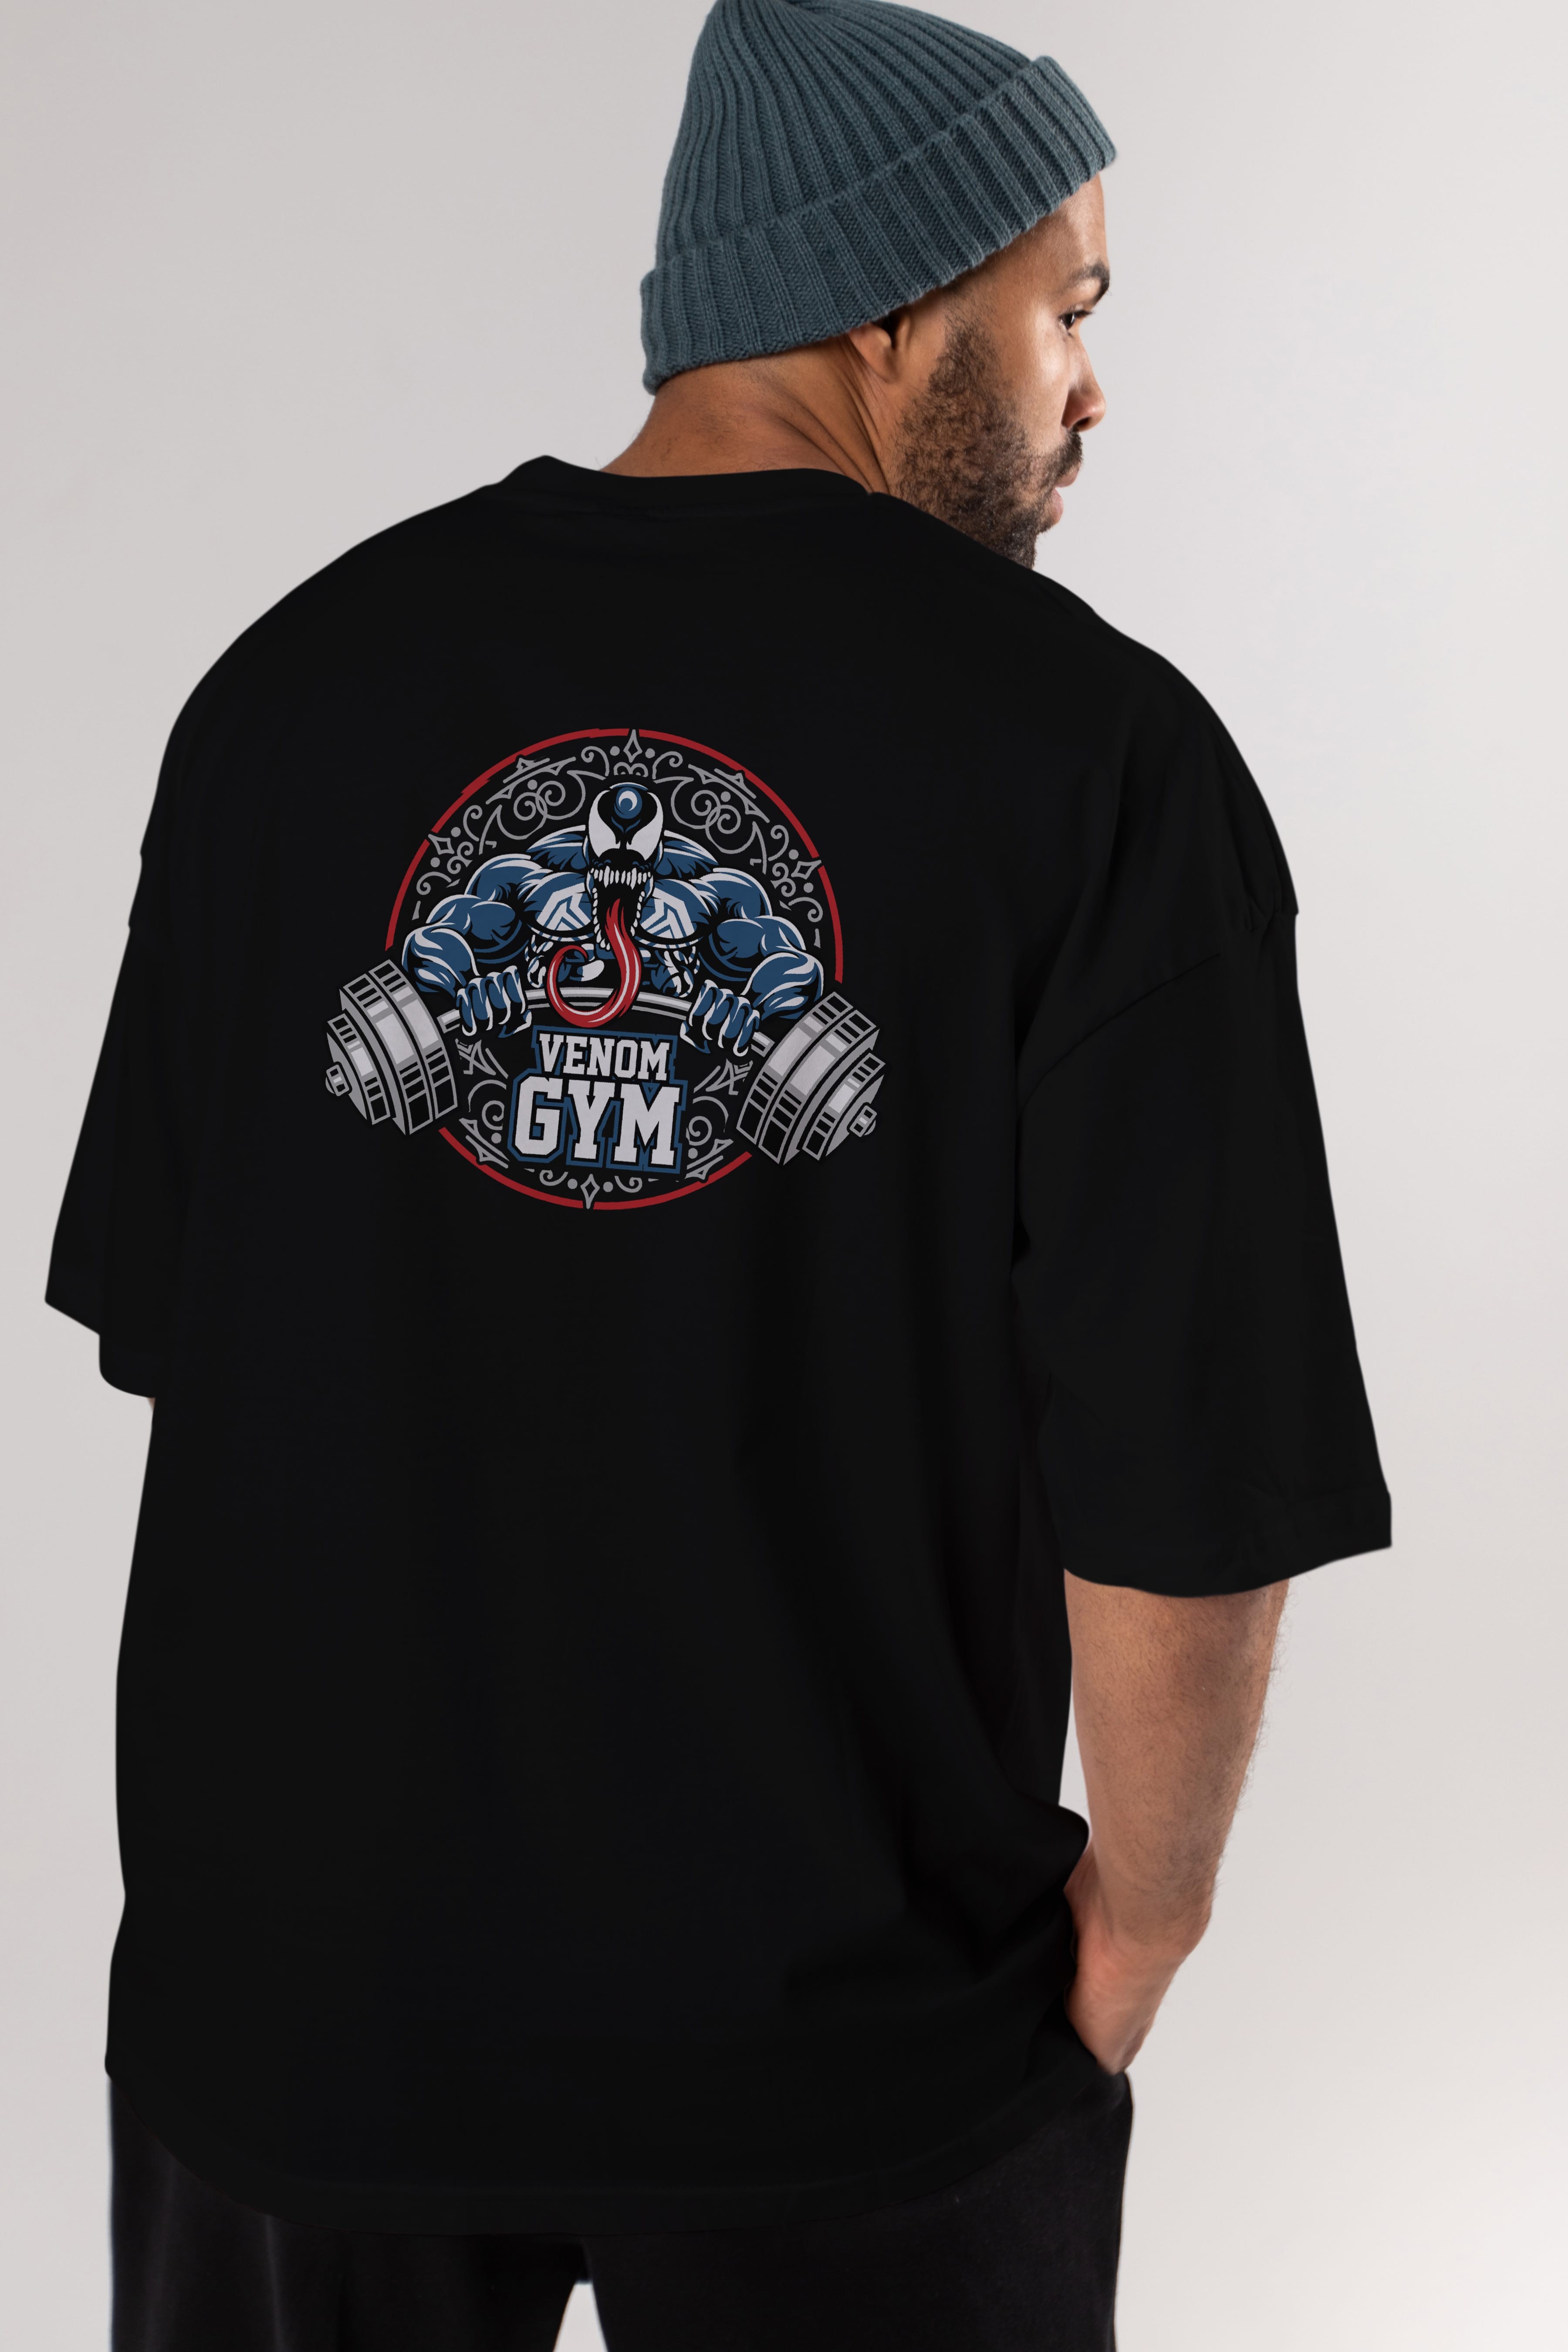 Venom GYM Arka Baskılı Oversize t-shirt Erkek Kadın Unisex %100 Pamuk Bisiklet Yaka tişort